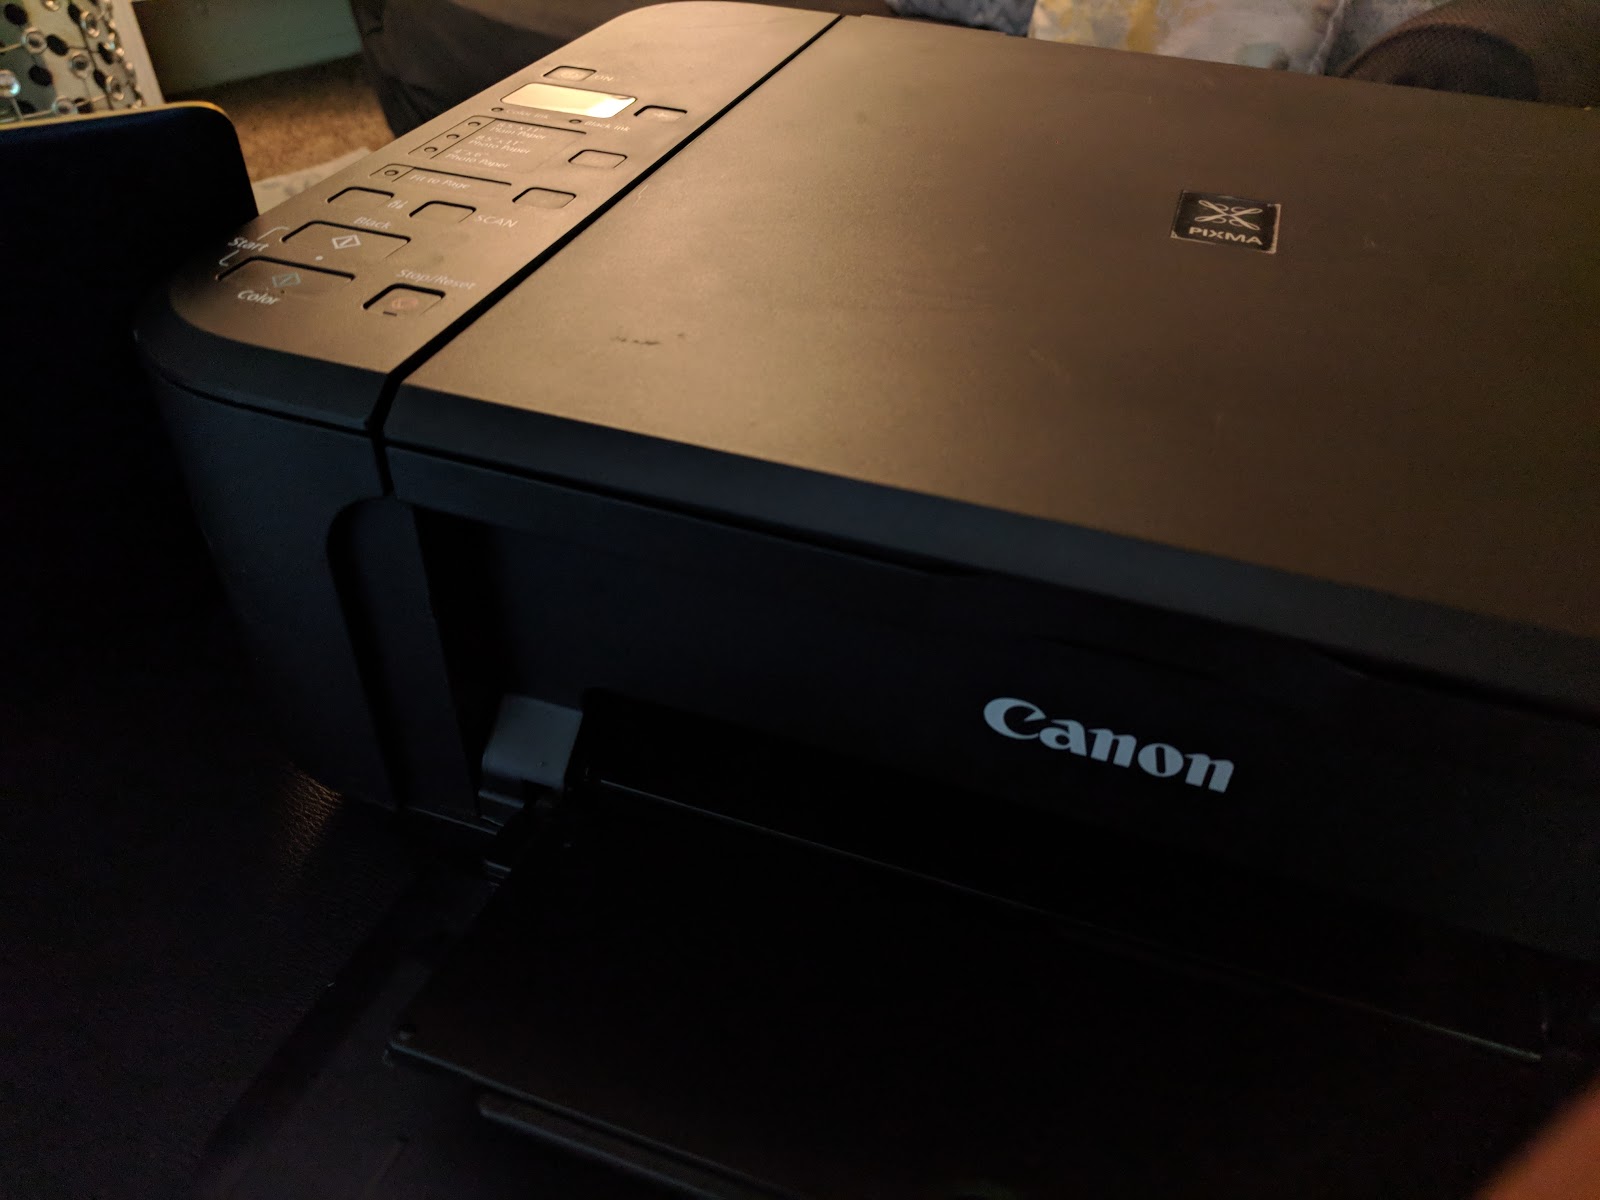 canon pixma mp480 scanner driver windows 10